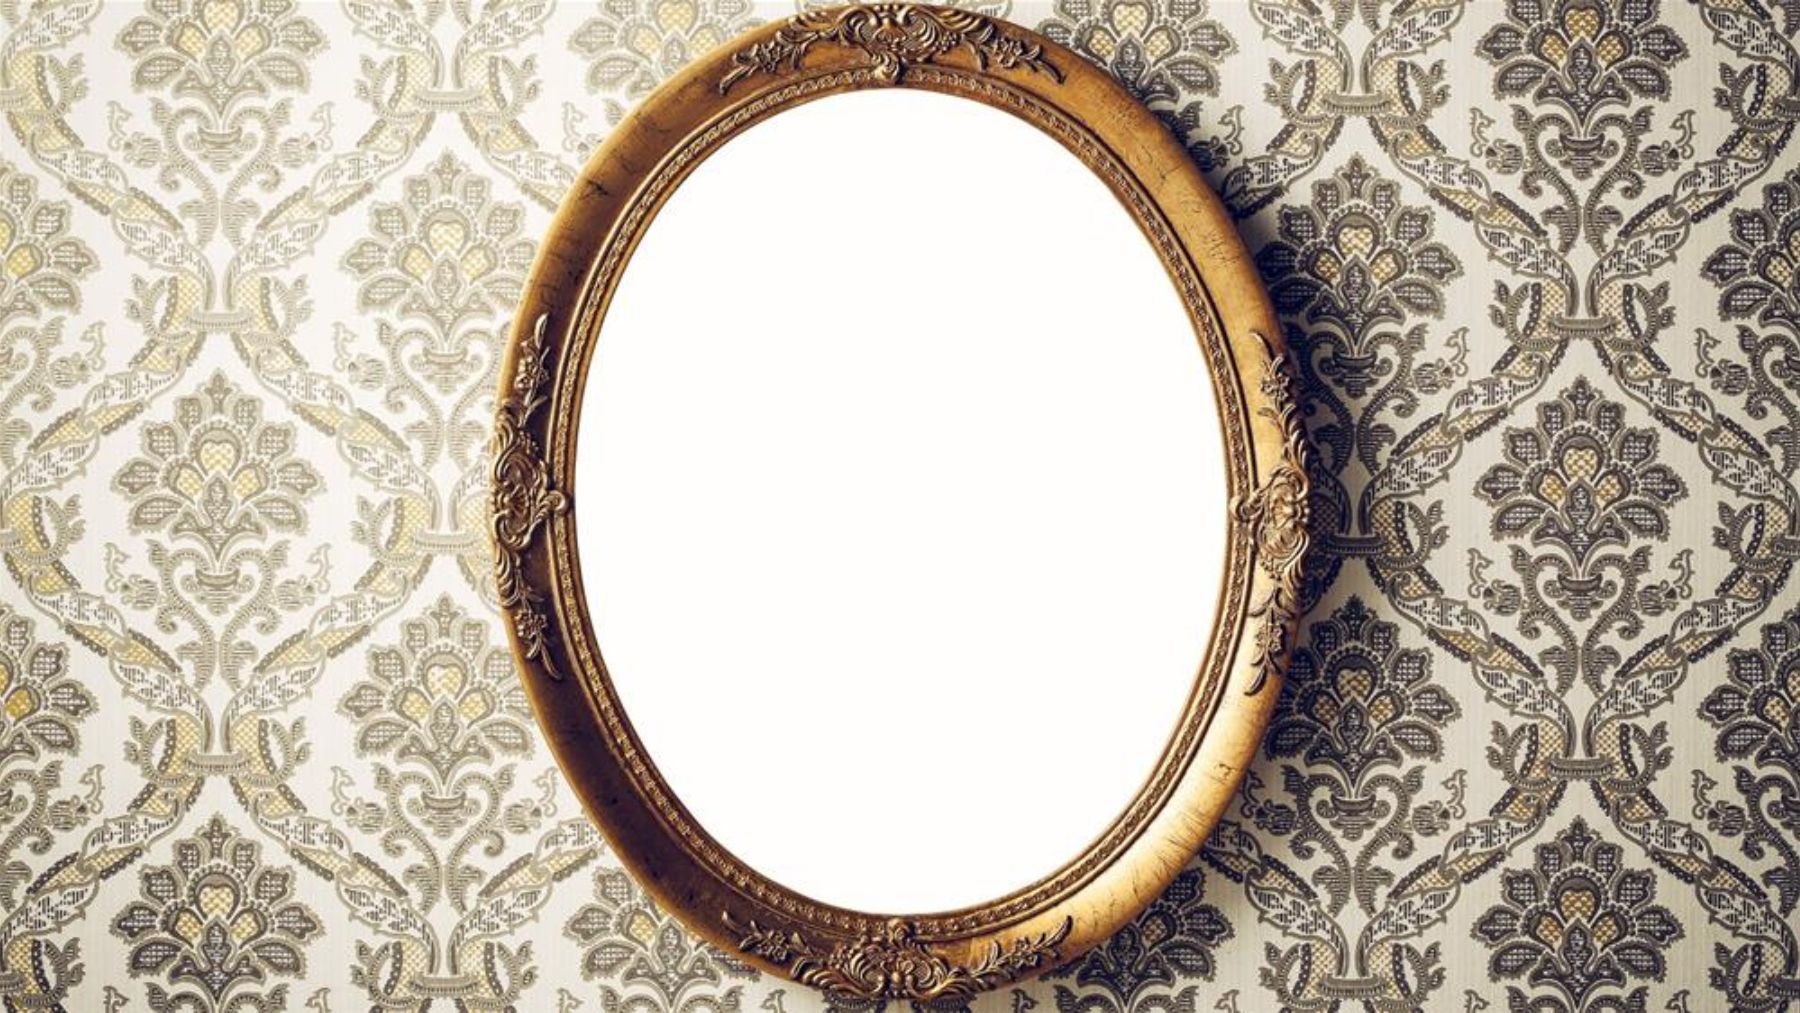 Descubre quién inventó el espejo tal y como lo conocemos hoy en día